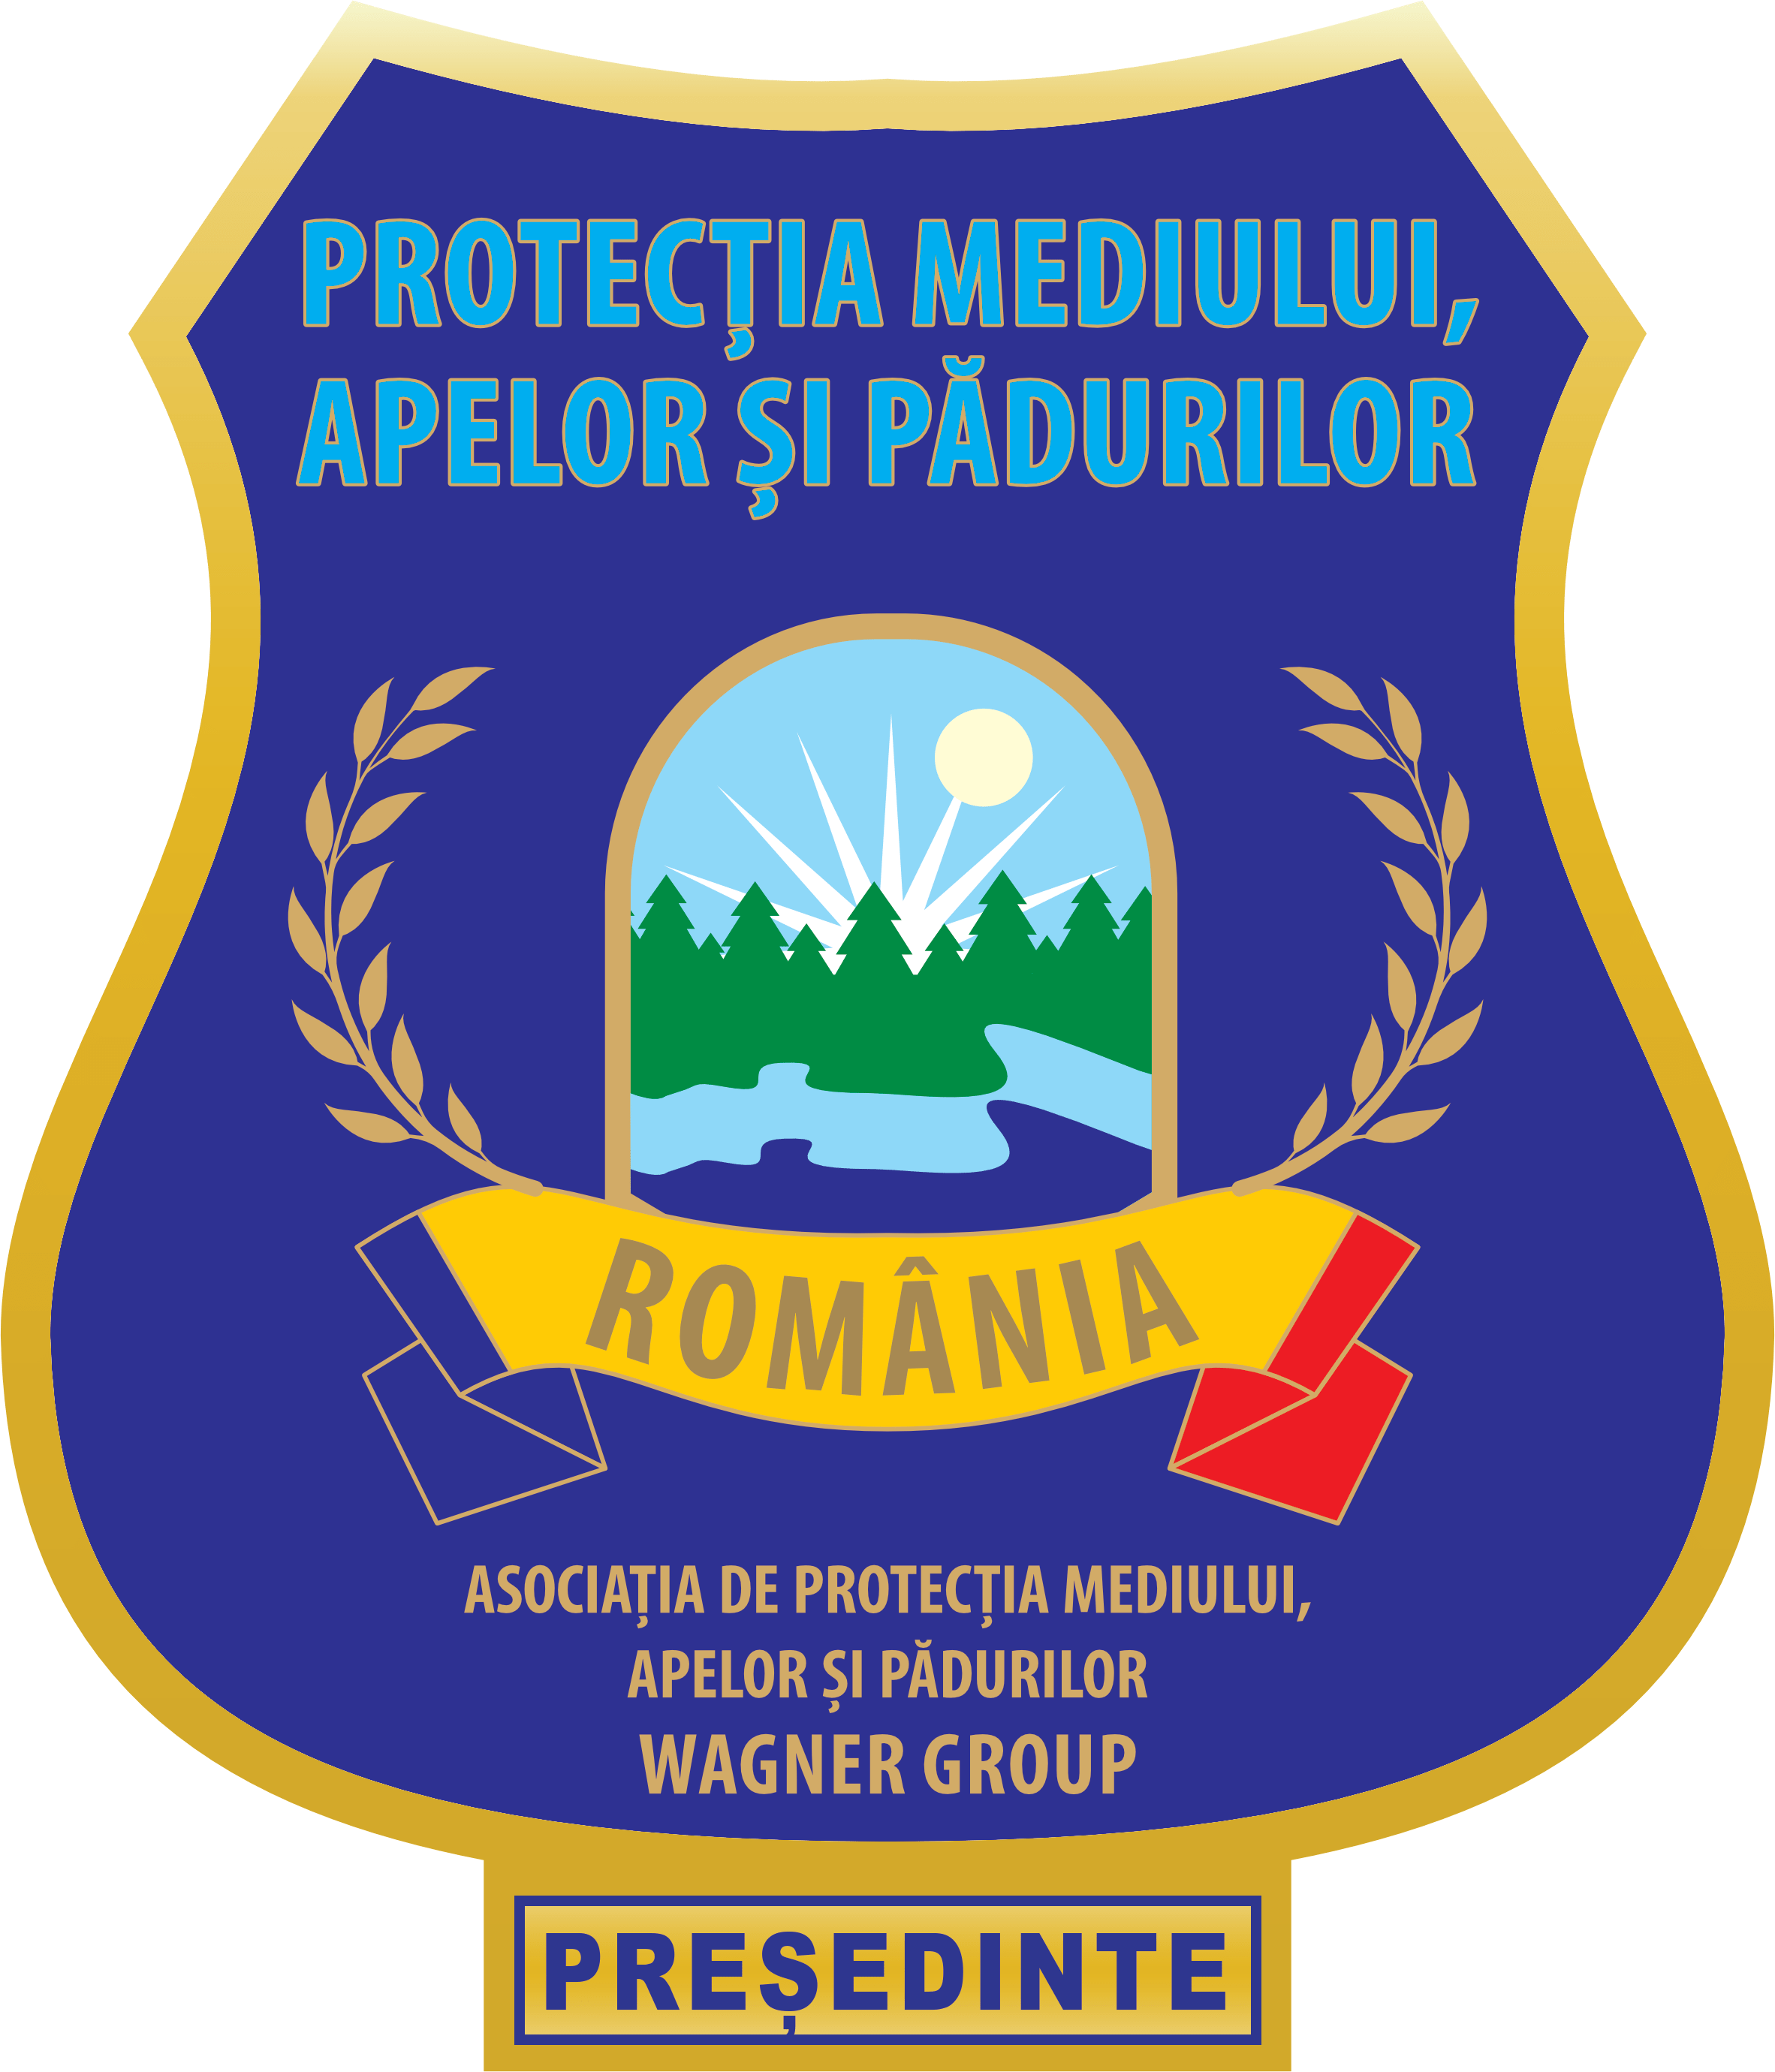 ASOCIATIA DE PROTECTIA MEDIULUI, APELOR SI PADURILOR-WAGNER GROUP logo